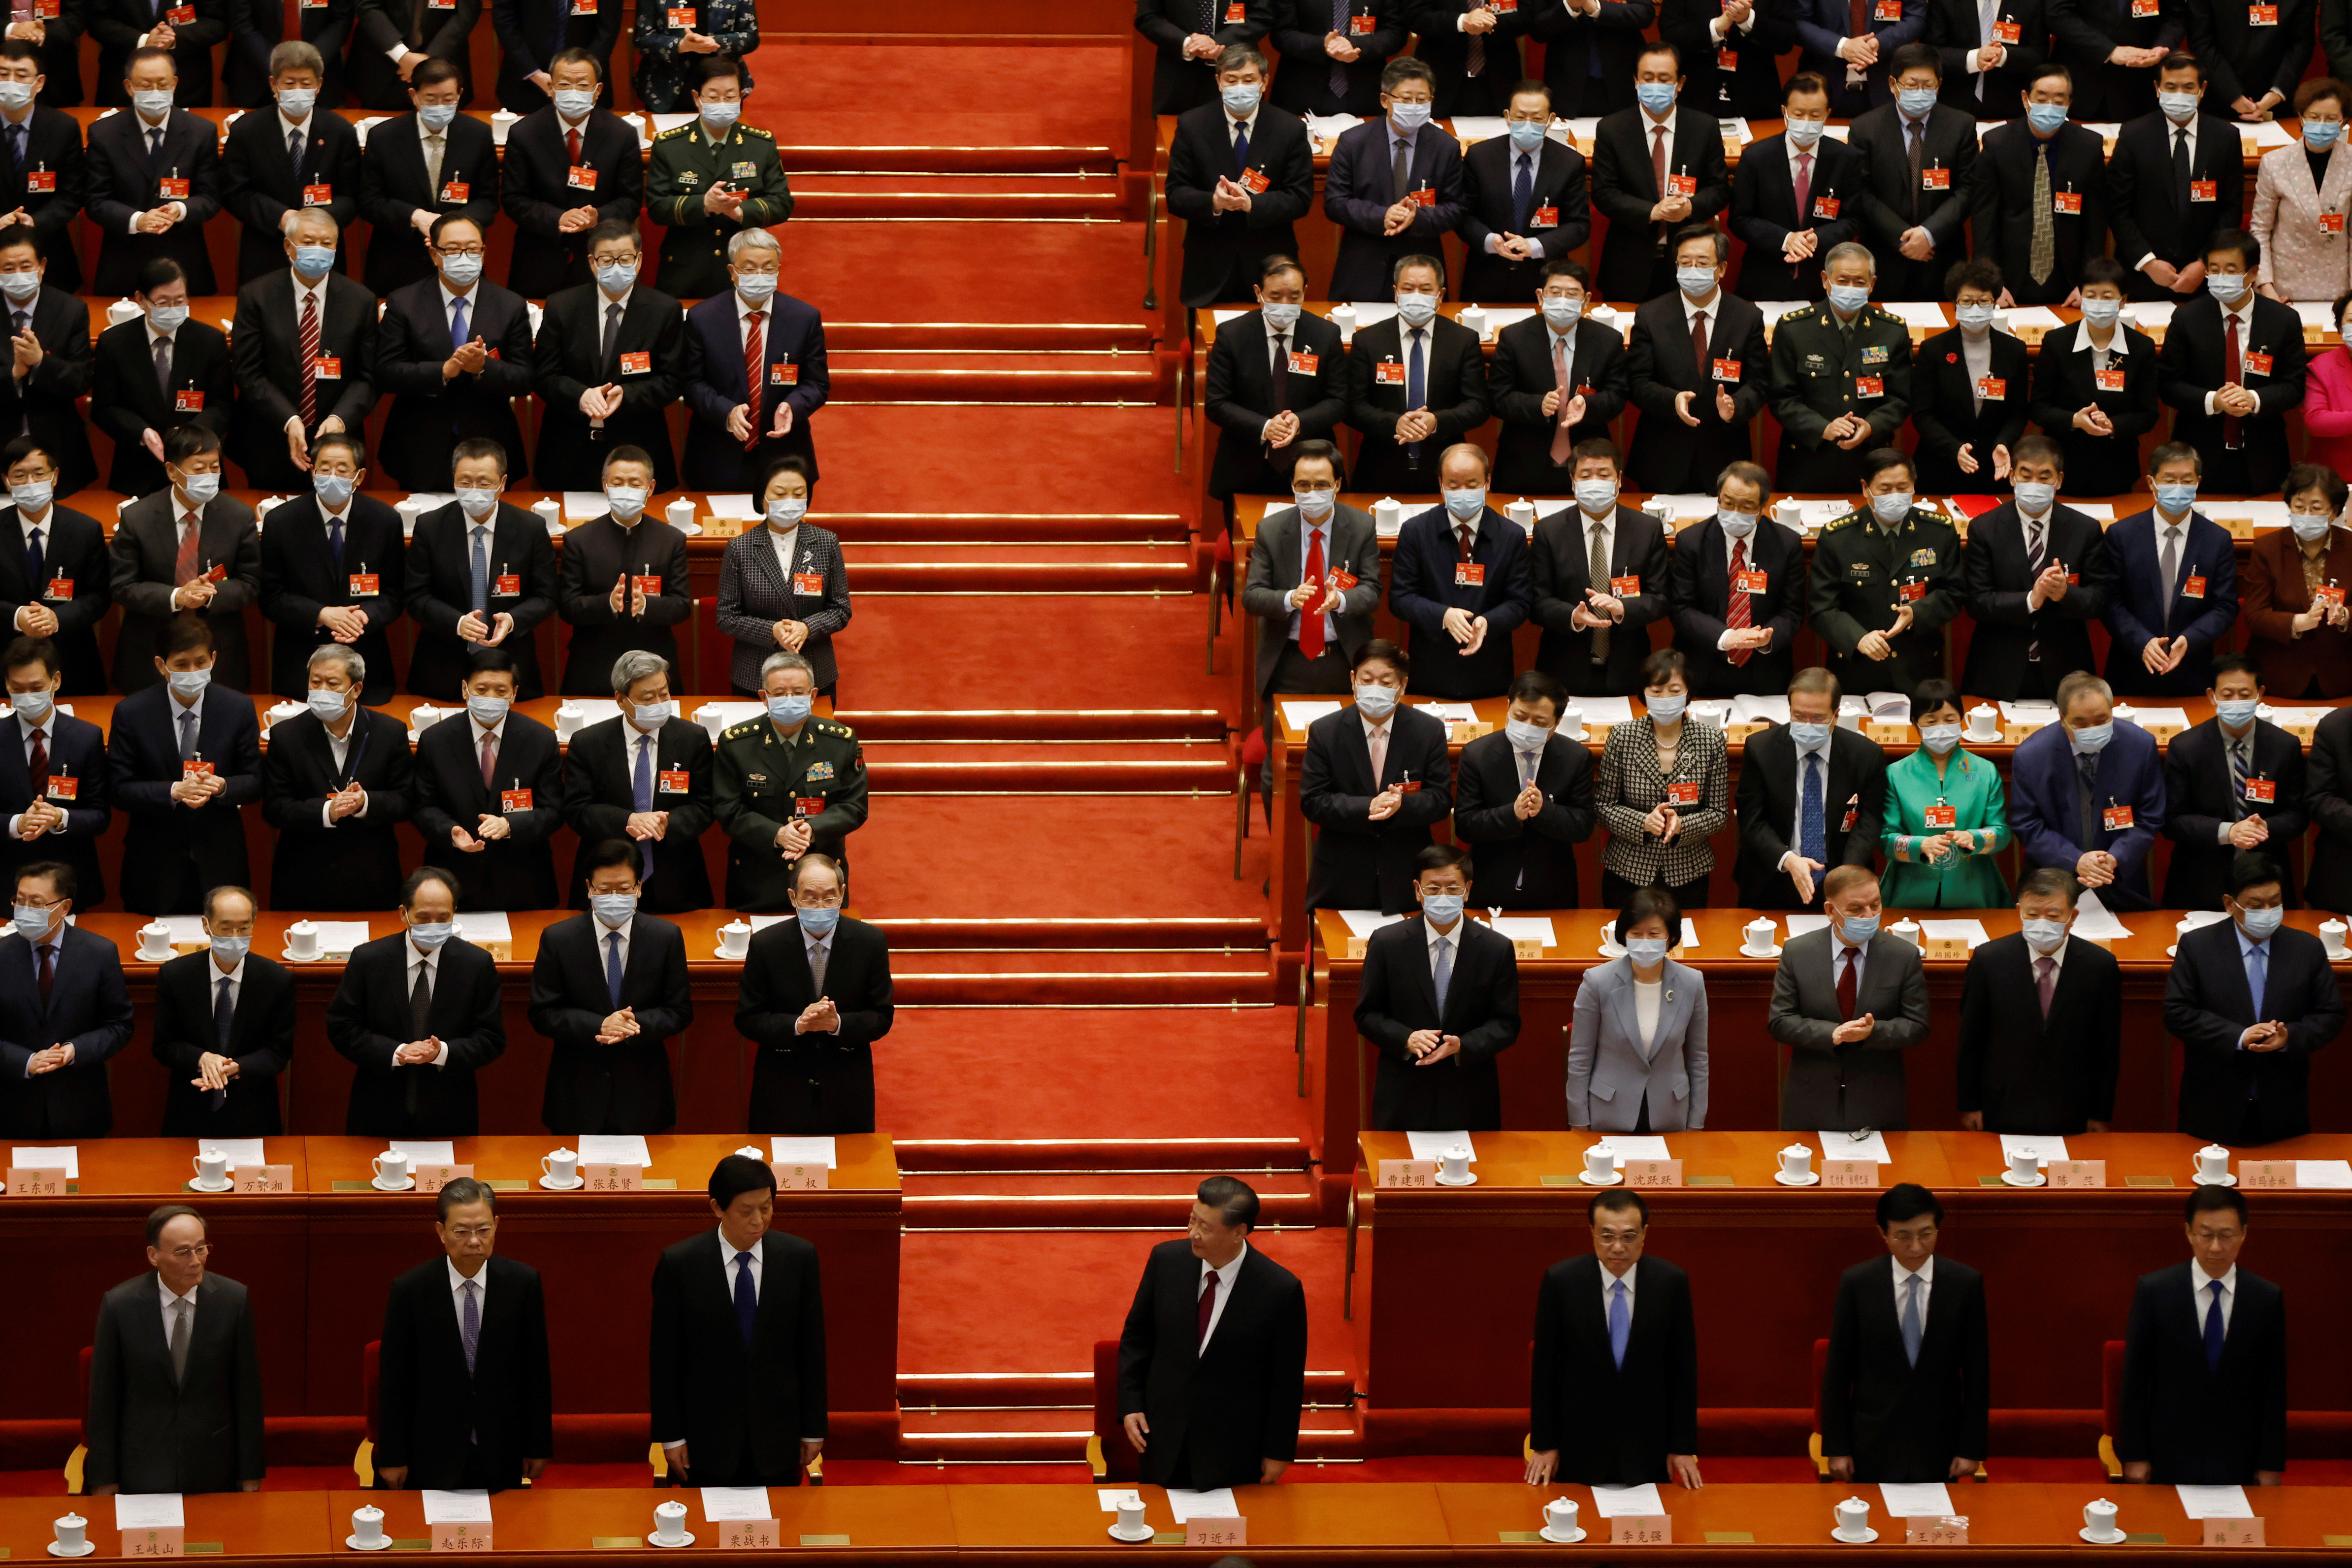 Kỳ họp Quốc hội v&agrave; Hội nghị Trung ương 3 của Trung Quốc nhận được sự quan t&acirc;m lớn từ giới đầu tư to&agrave;n cầu - Ảnh: Getty Images